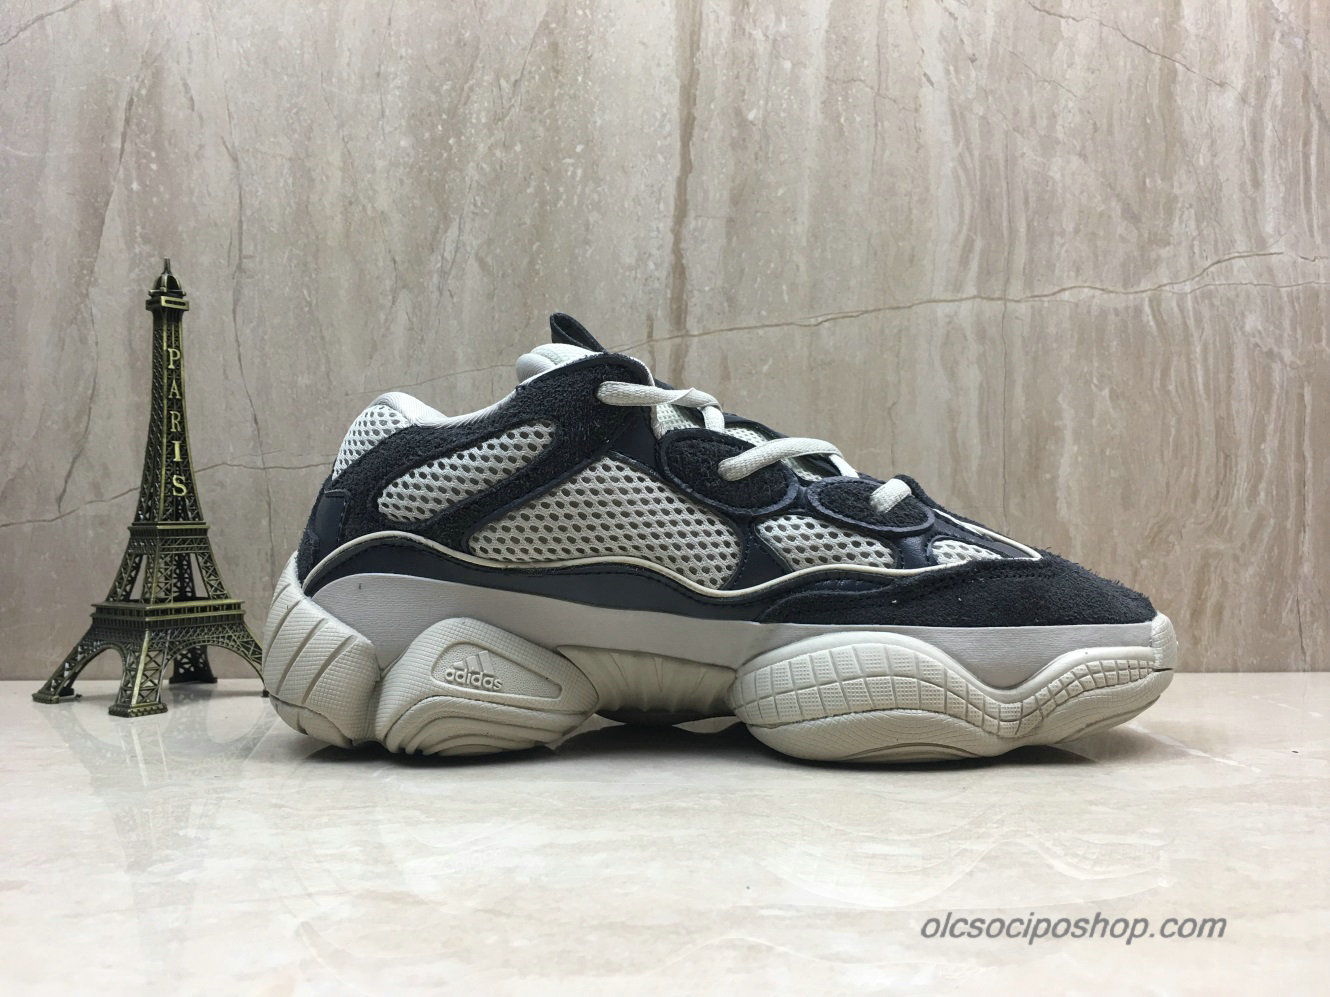 Adidas Yeezy Desert Rat 500 Blush Fekete/Szürke Cipők (D82900) - Kattintásra bezárul